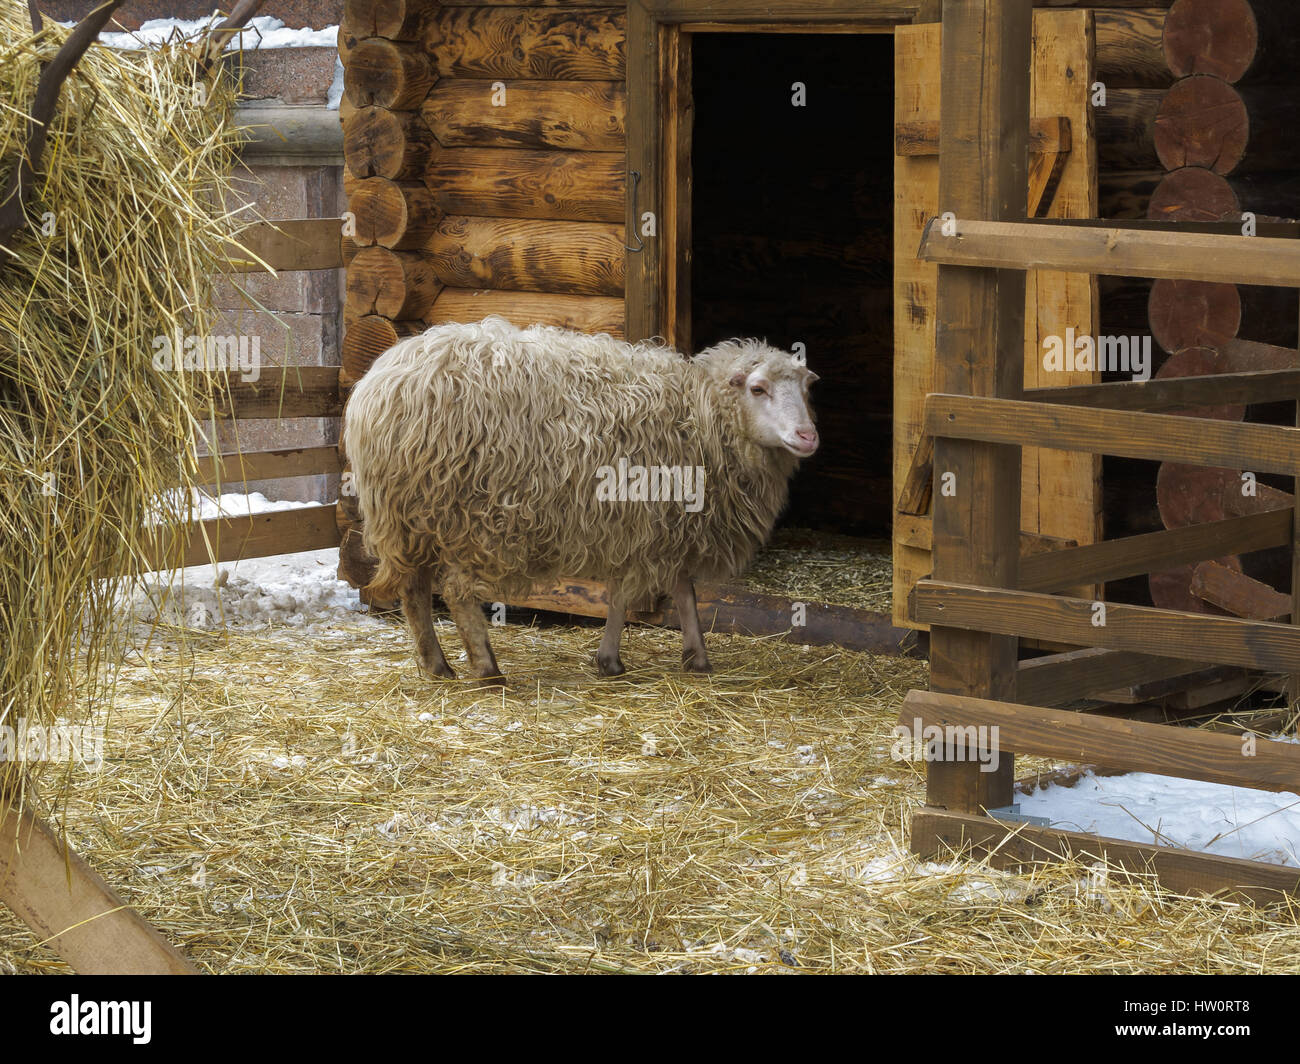 Con i capelli lunghi pecore in un recinto vicino a fienile. Inverno, la neve sulla terra trhe. Foto Stock